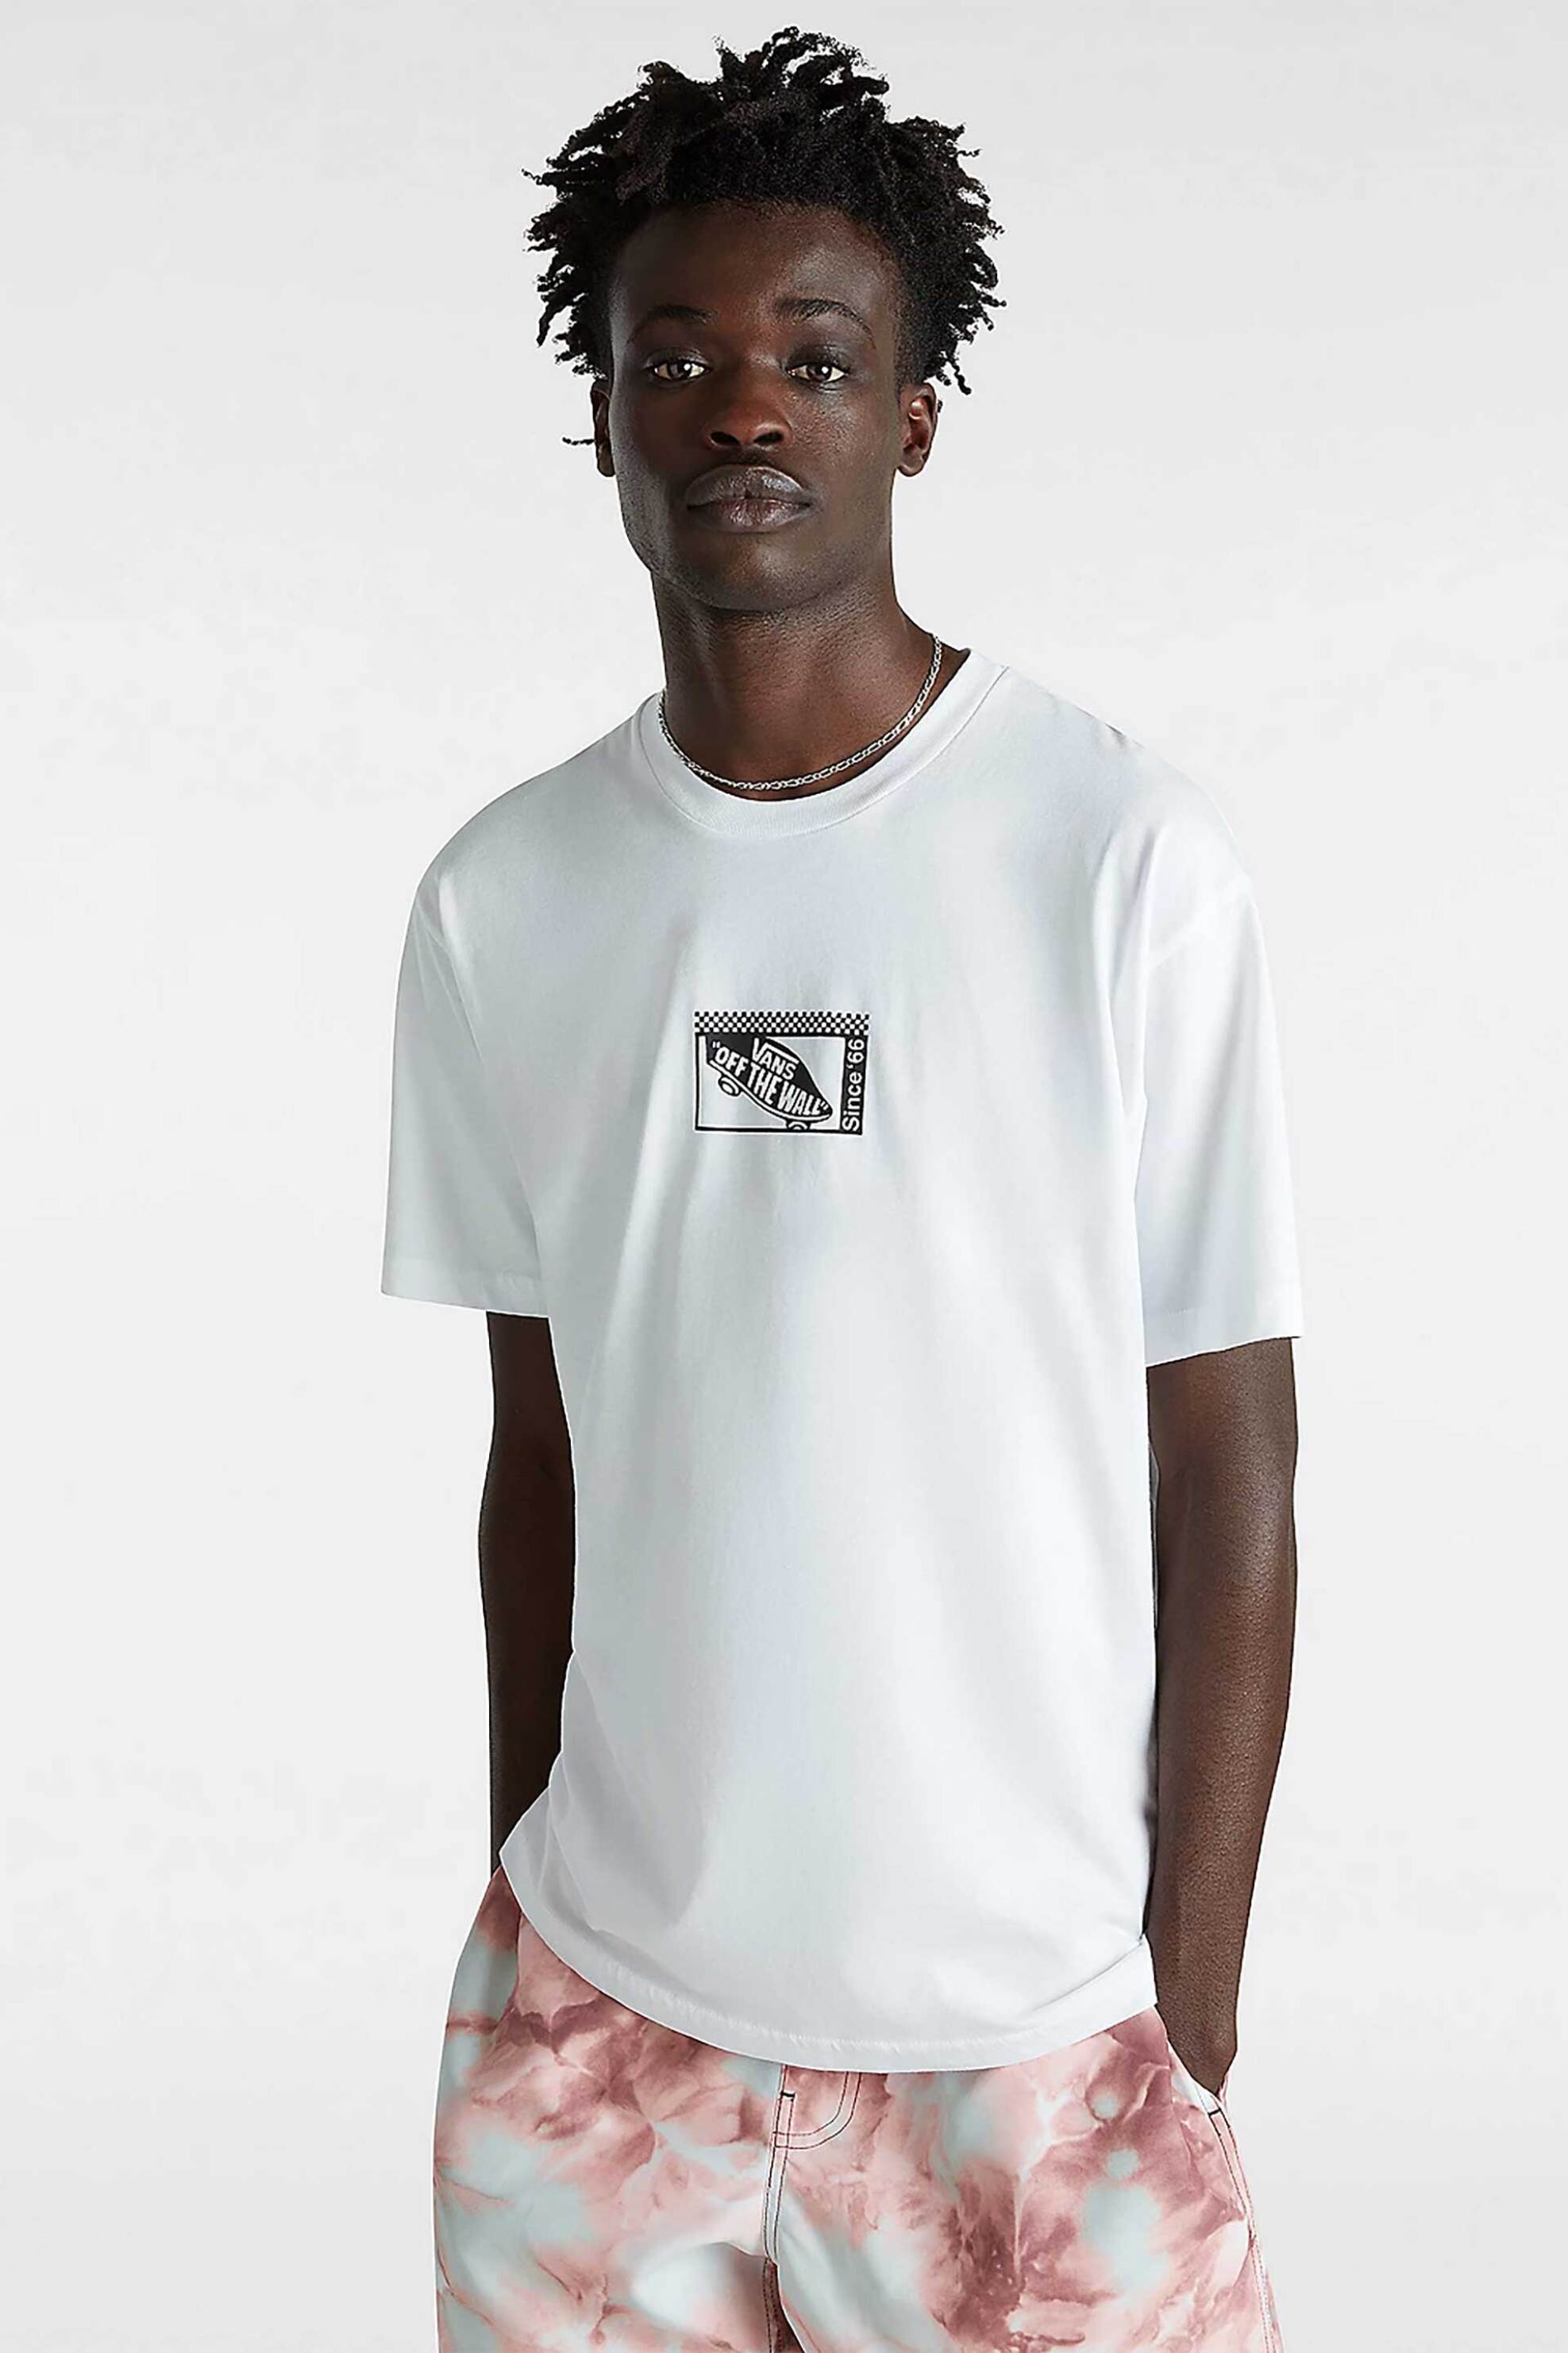 Ανδρική Μόδα > Ανδρικά Ρούχα > Ανδρικές Μπλούζες > Ανδρικά T-Shirts Vans ανδρικό T-shirt με print "Tech Box" - VN000G5NWHT1 Λευκό